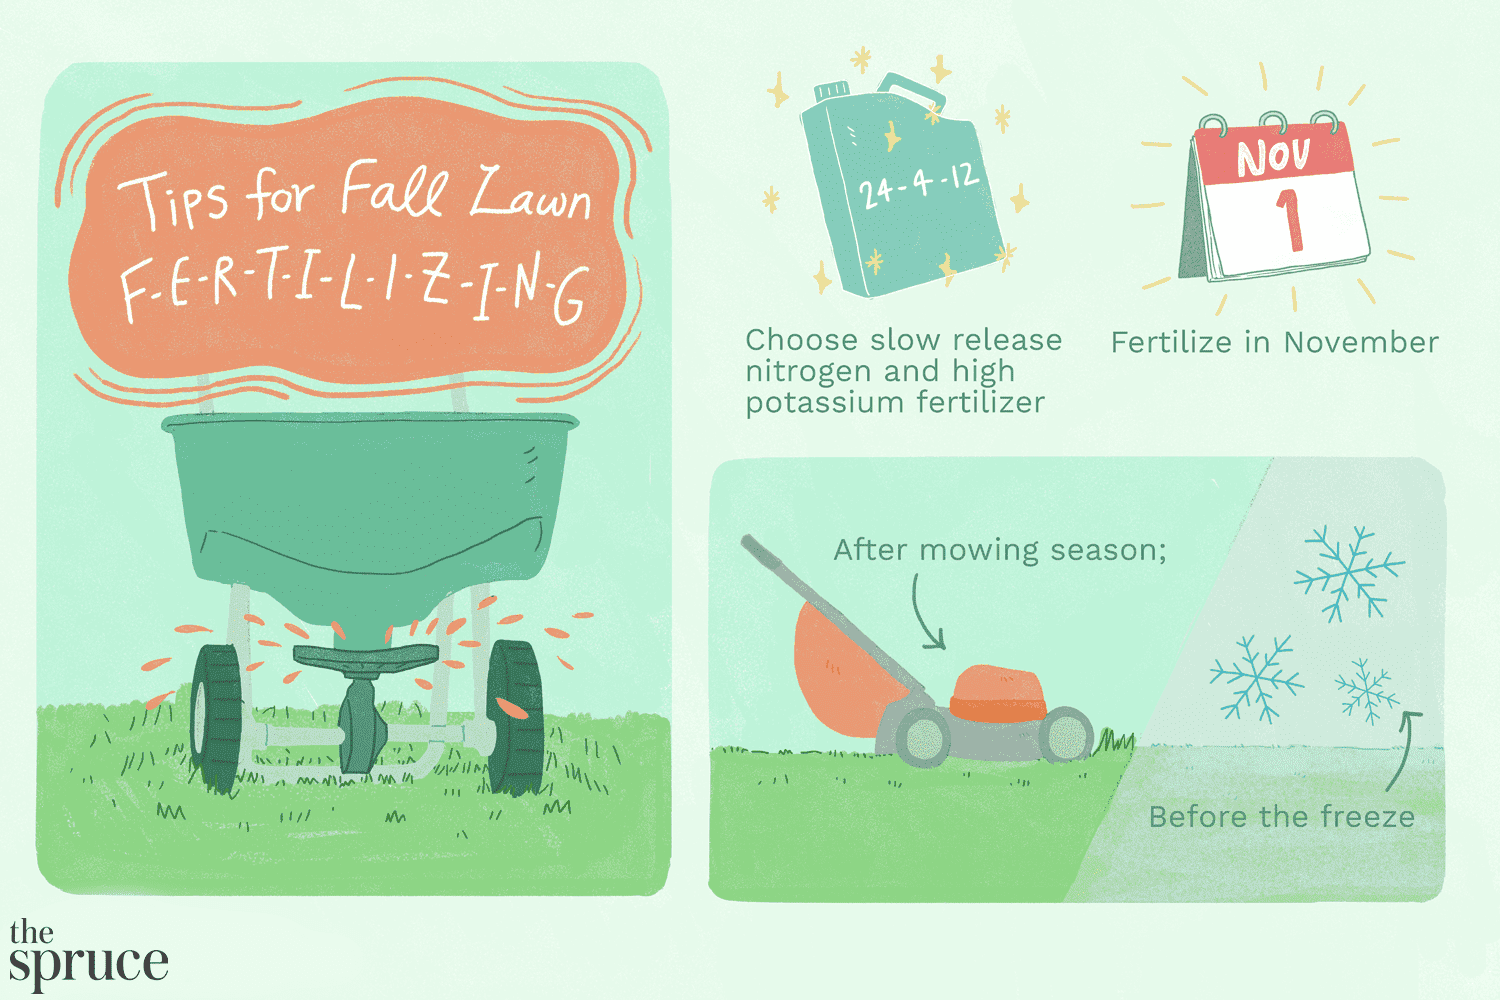 Dicas para a ilustração de fertilização do gramado no outono